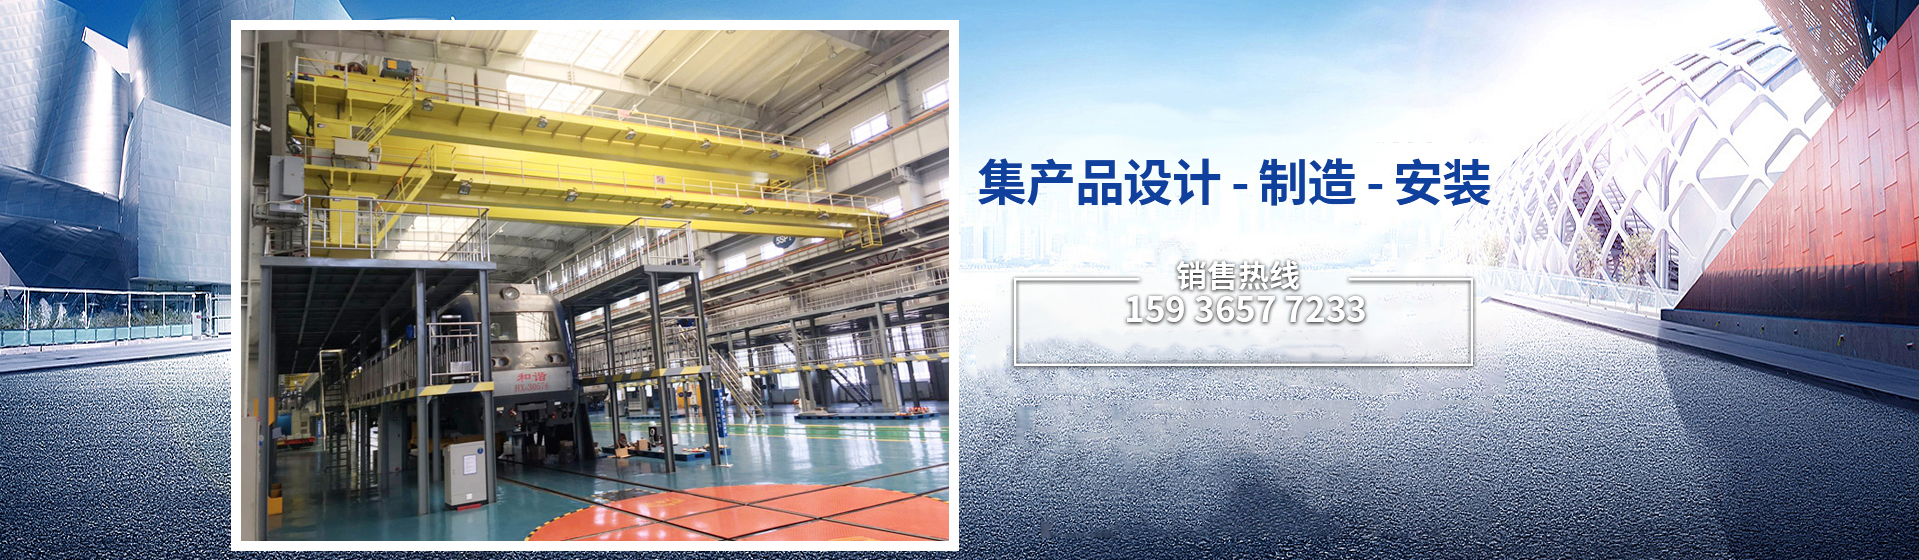 河南省贝塔机电设备有限公司